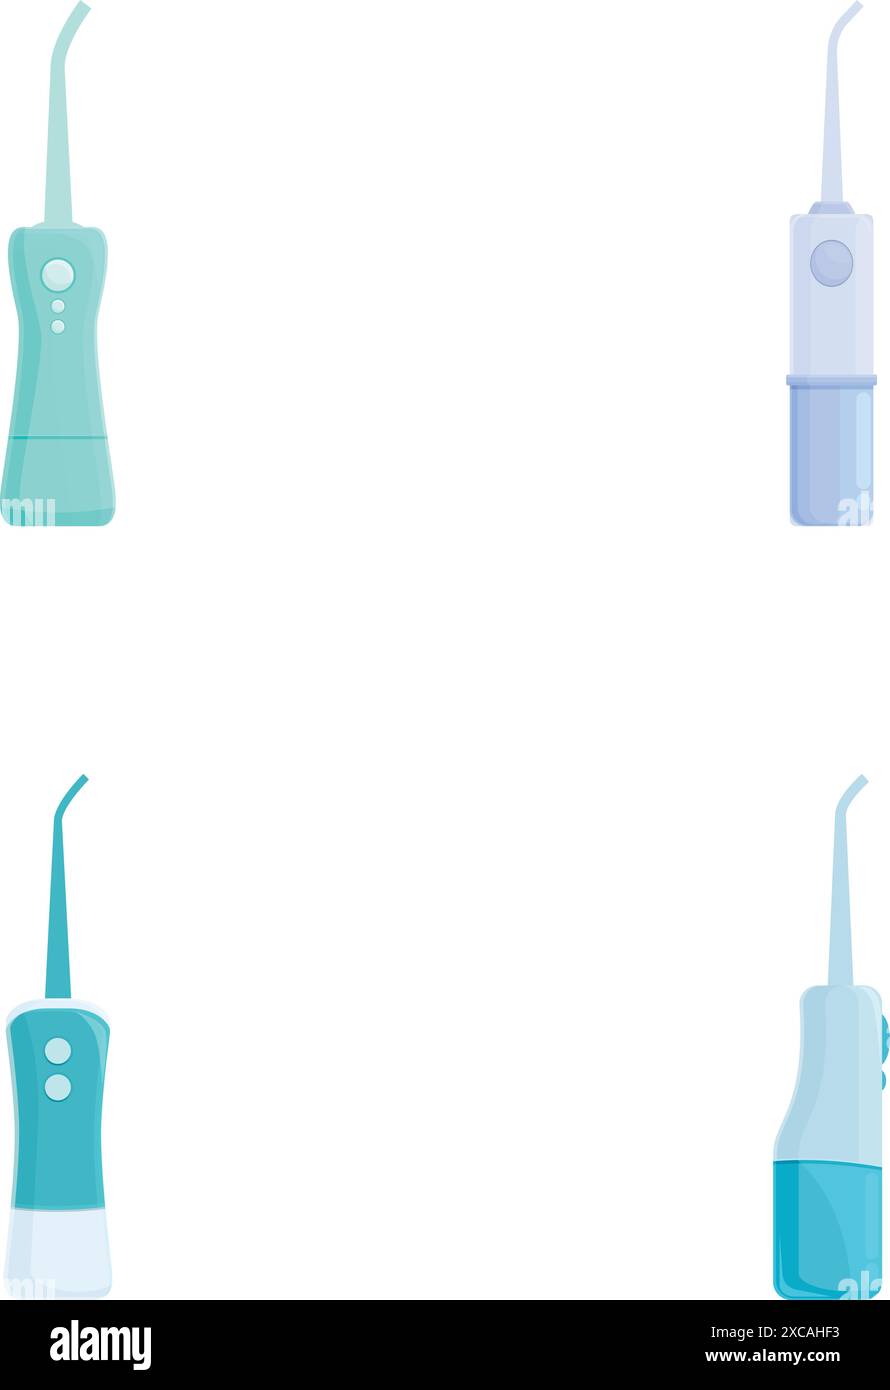 Raccolta di galleggianti elettrici colorati per l'igiene dentale isolati su sfondo bianco Illustrazione Vettoriale